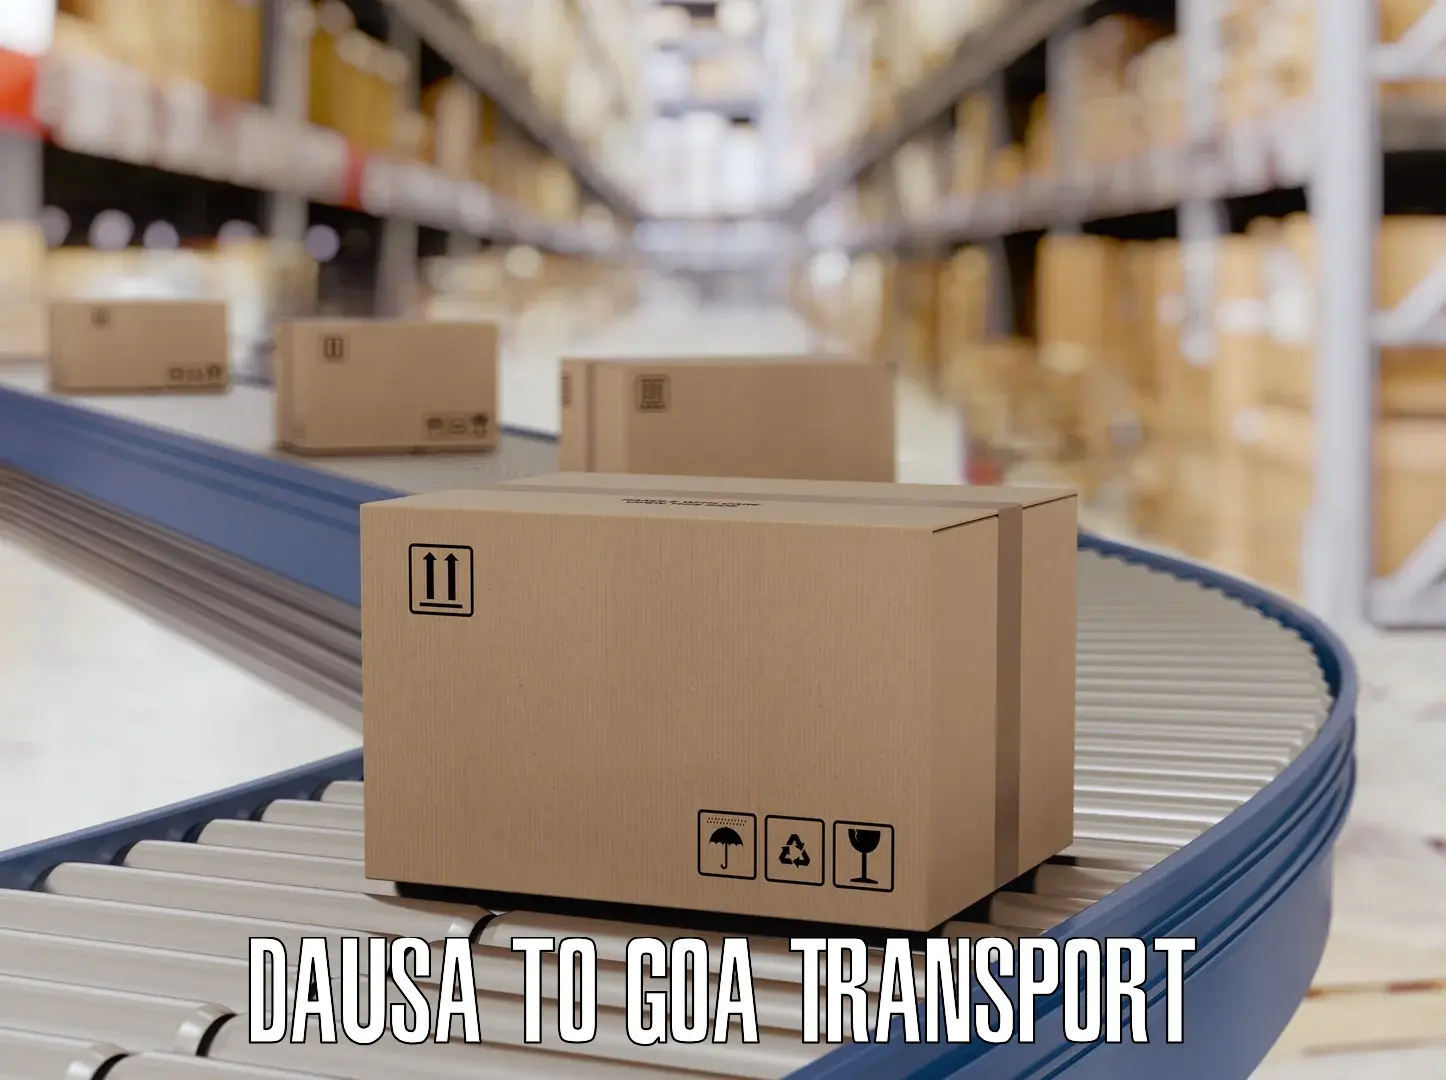 Daily transport service Dausa to Vasco da Gama